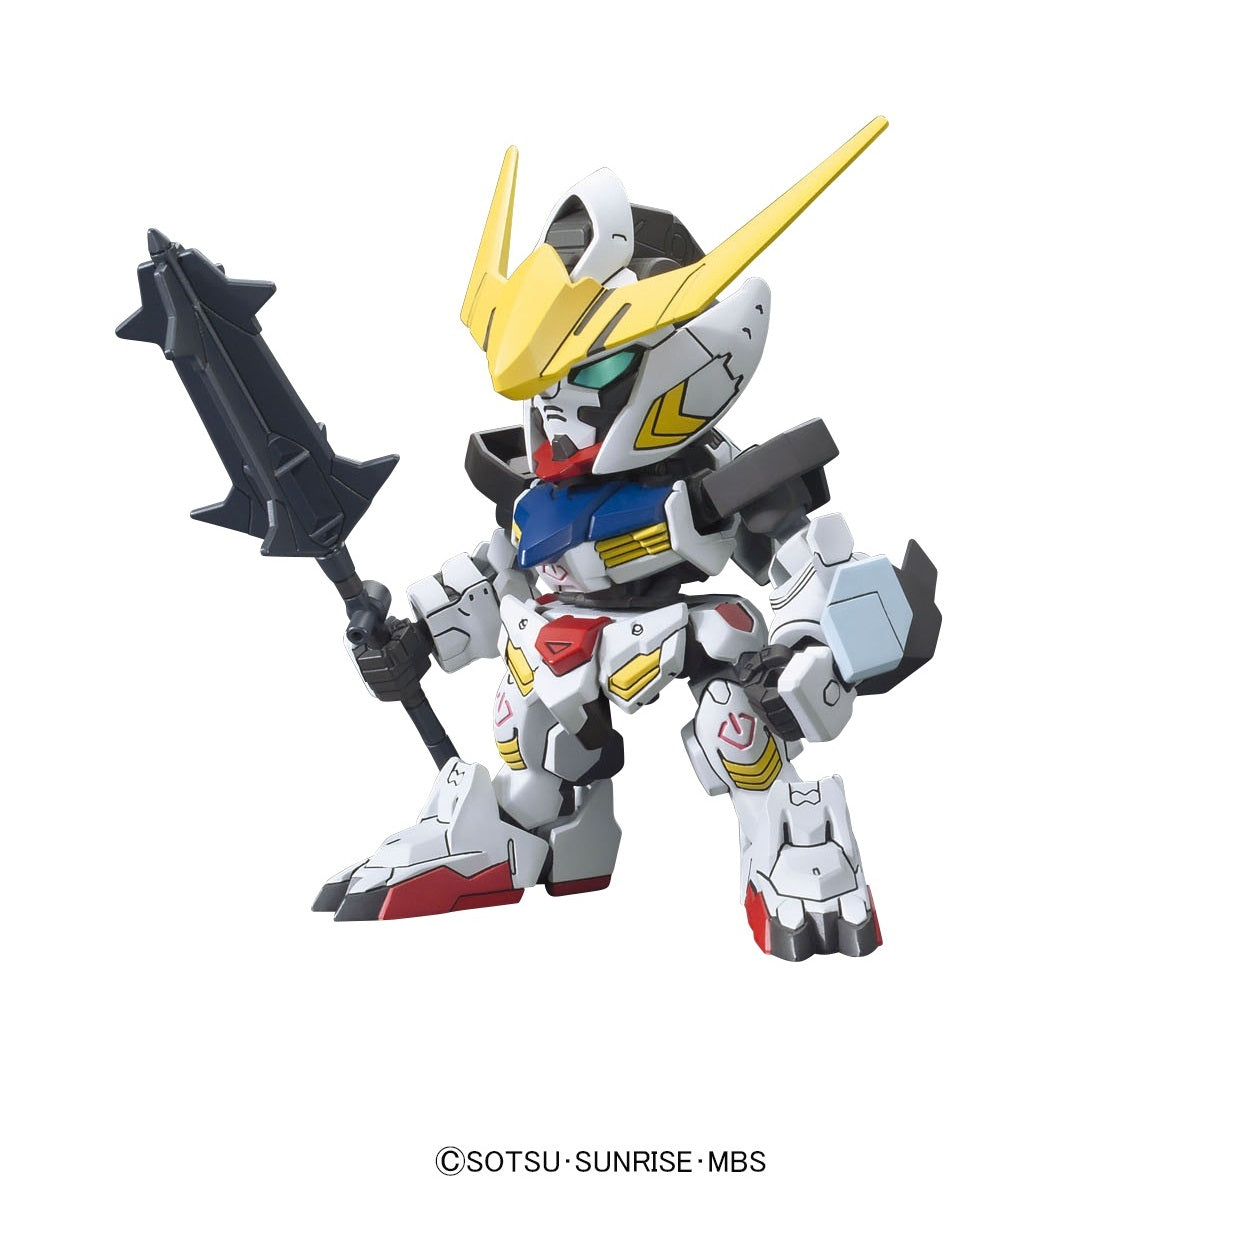 BB401 Gundam Barbatos DX-Bandai-Ace Cards & Collectibles